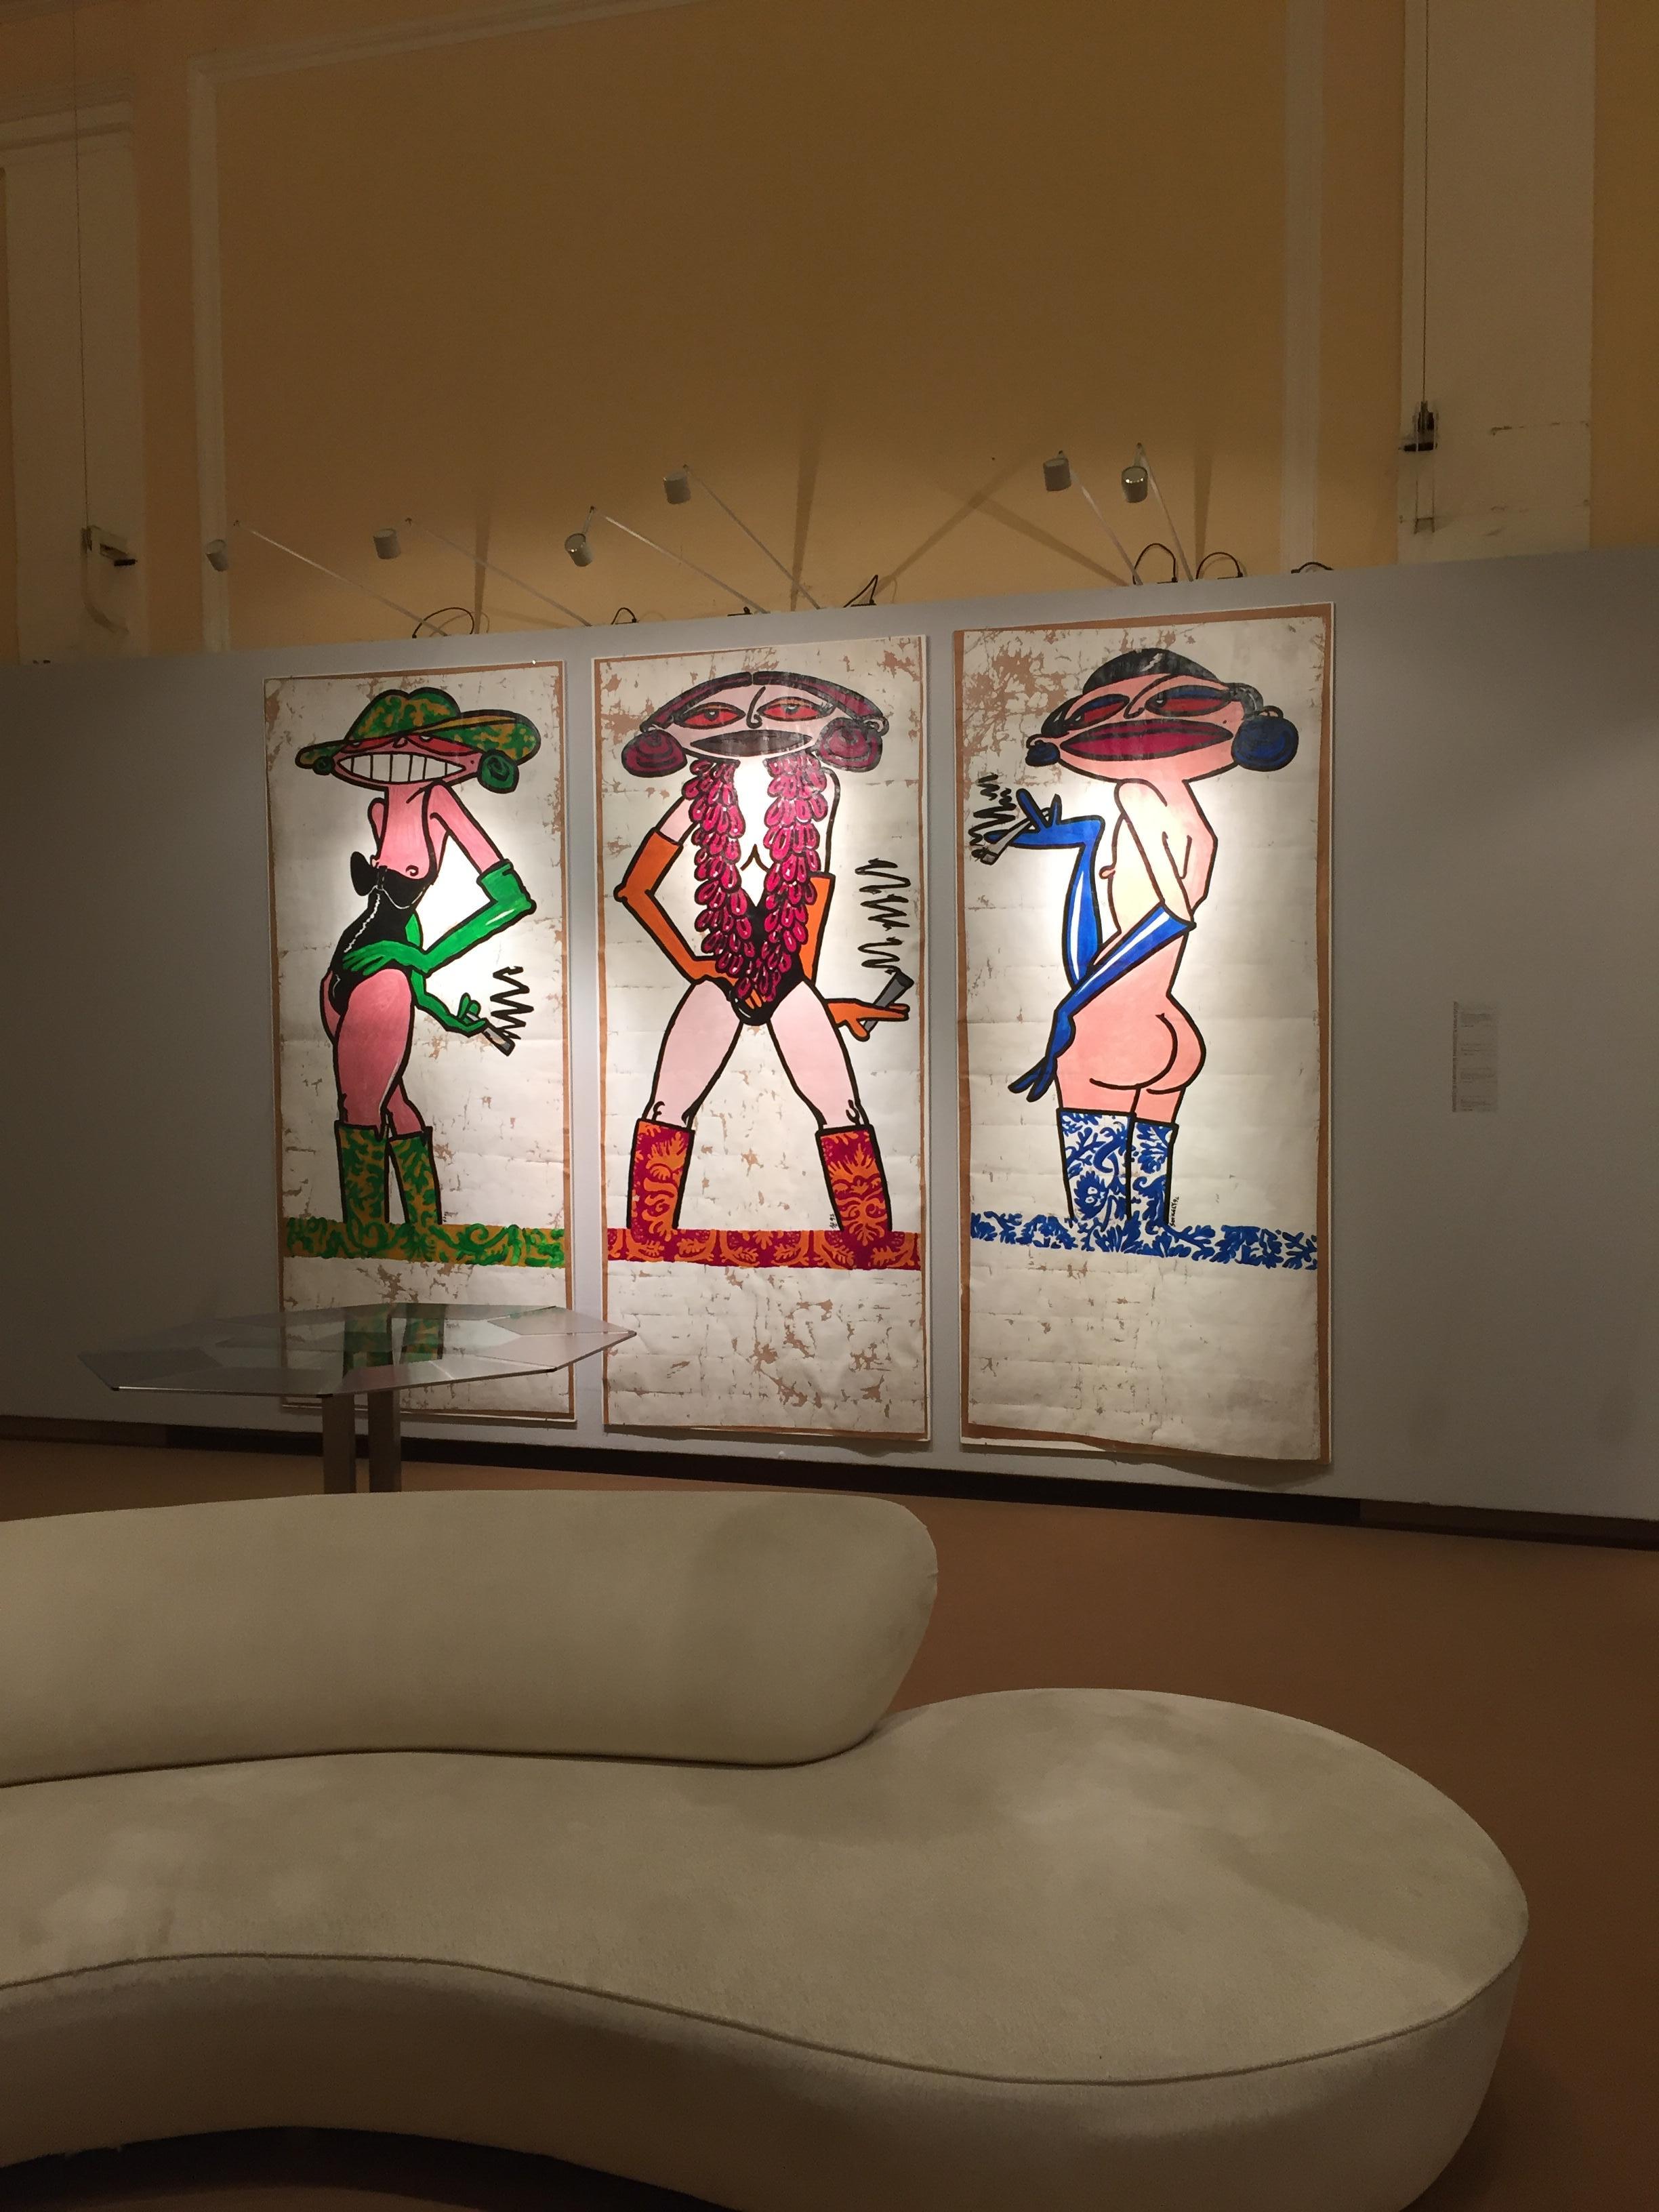 Drei einzelne Gemälde, Mischtechnik auf Papier, signiert und datiert P. Szekely 92, entstanden anlässlich einer Präsentation von Emilio Pucci Stoffen in den Woka Showrooms zusammen mit Sotheby's, damals auch im 